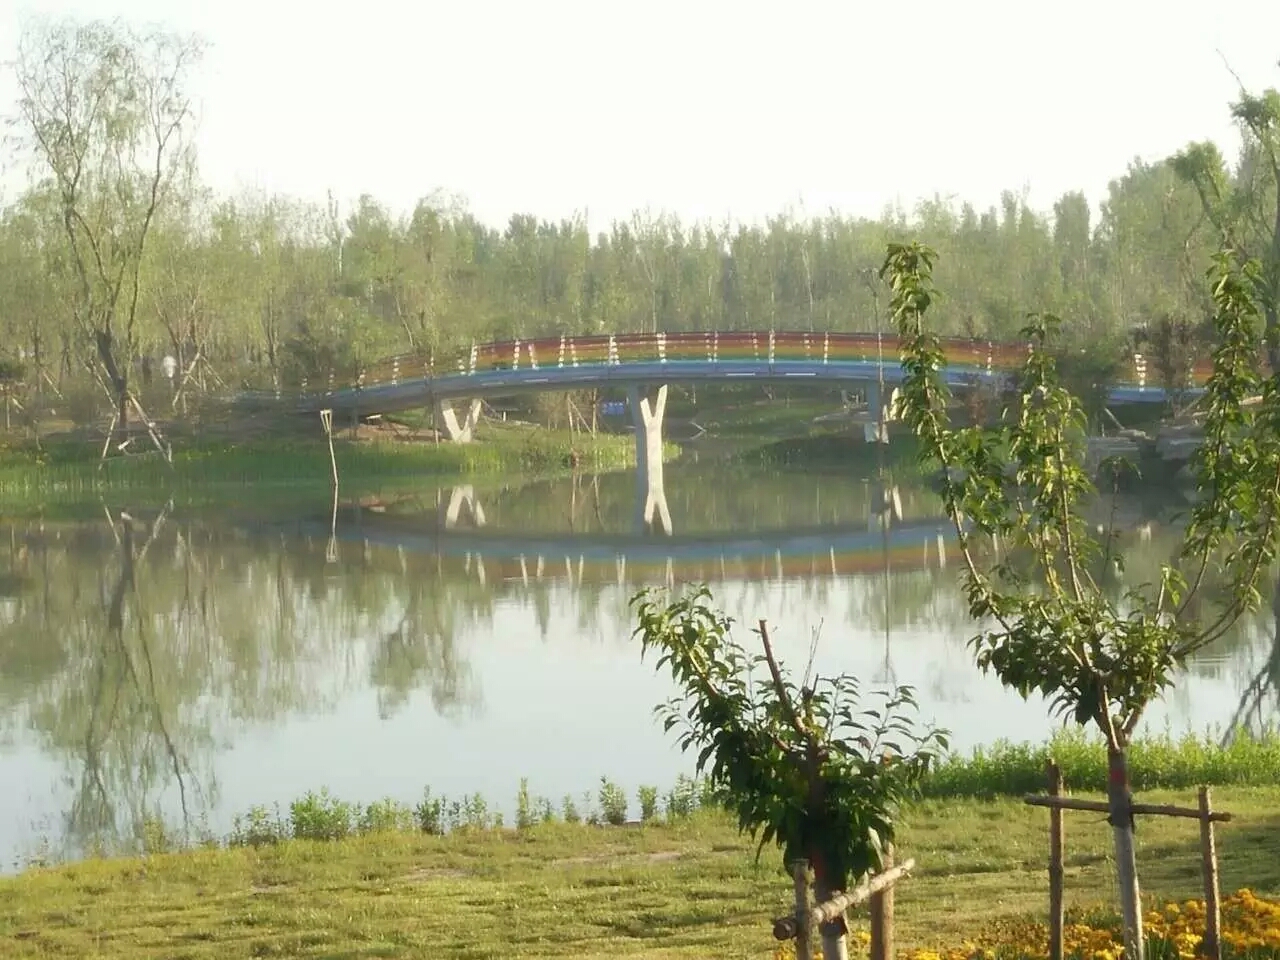 衡水阜城有河北第一个八景公园